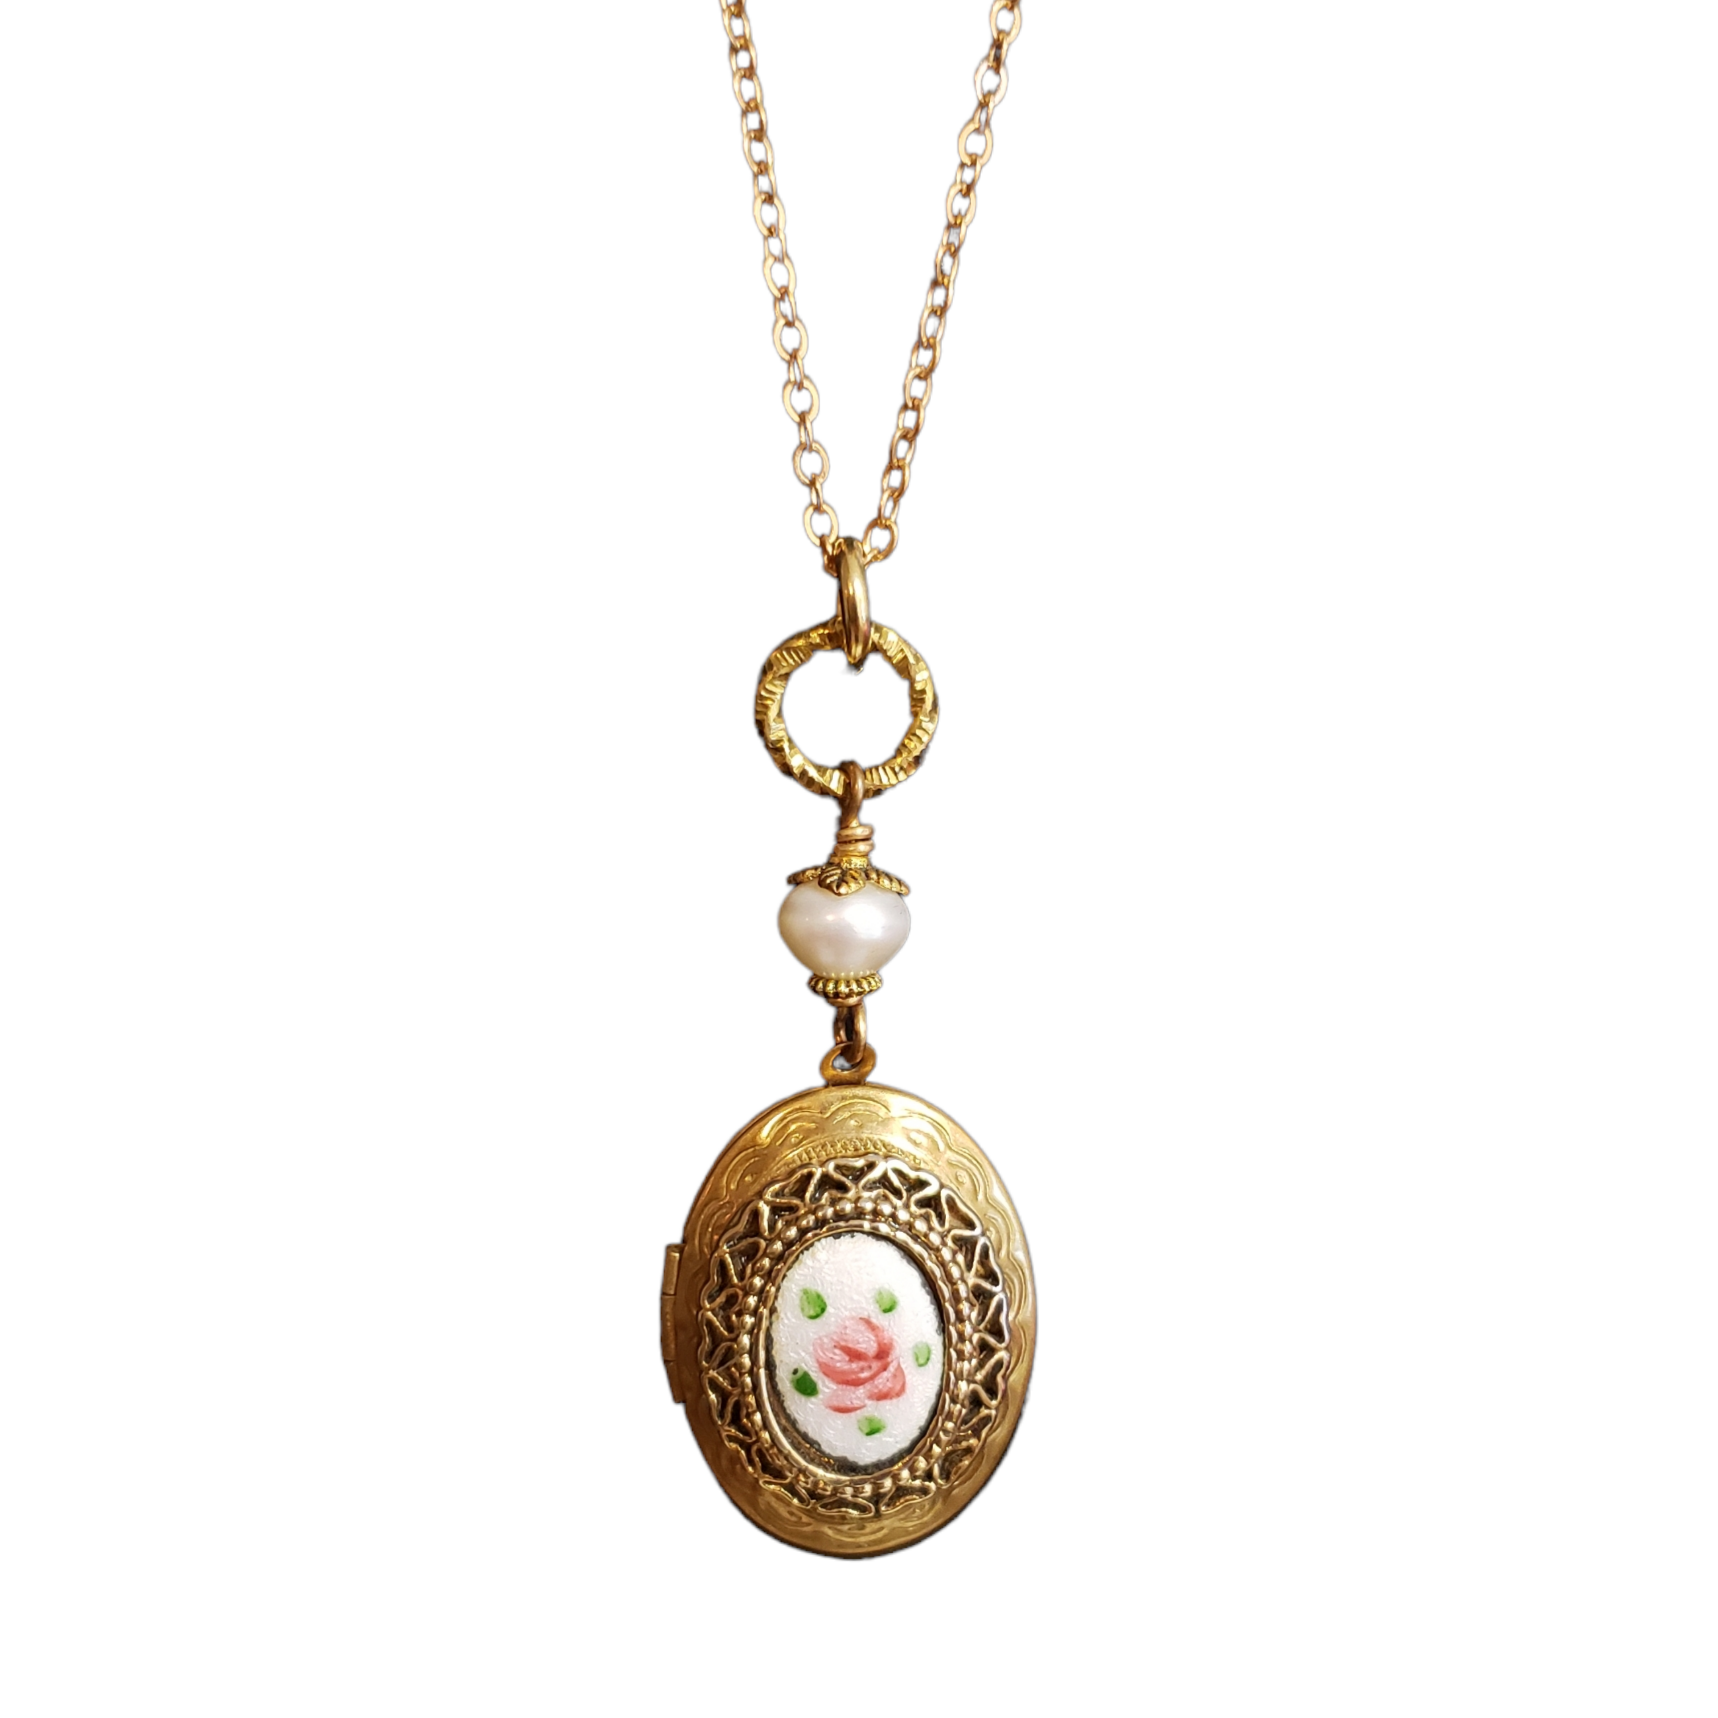 Vintage 14k Gold Plated Floral Design Etched Locket Pendant Necklace 20” -  Ellis Antiques